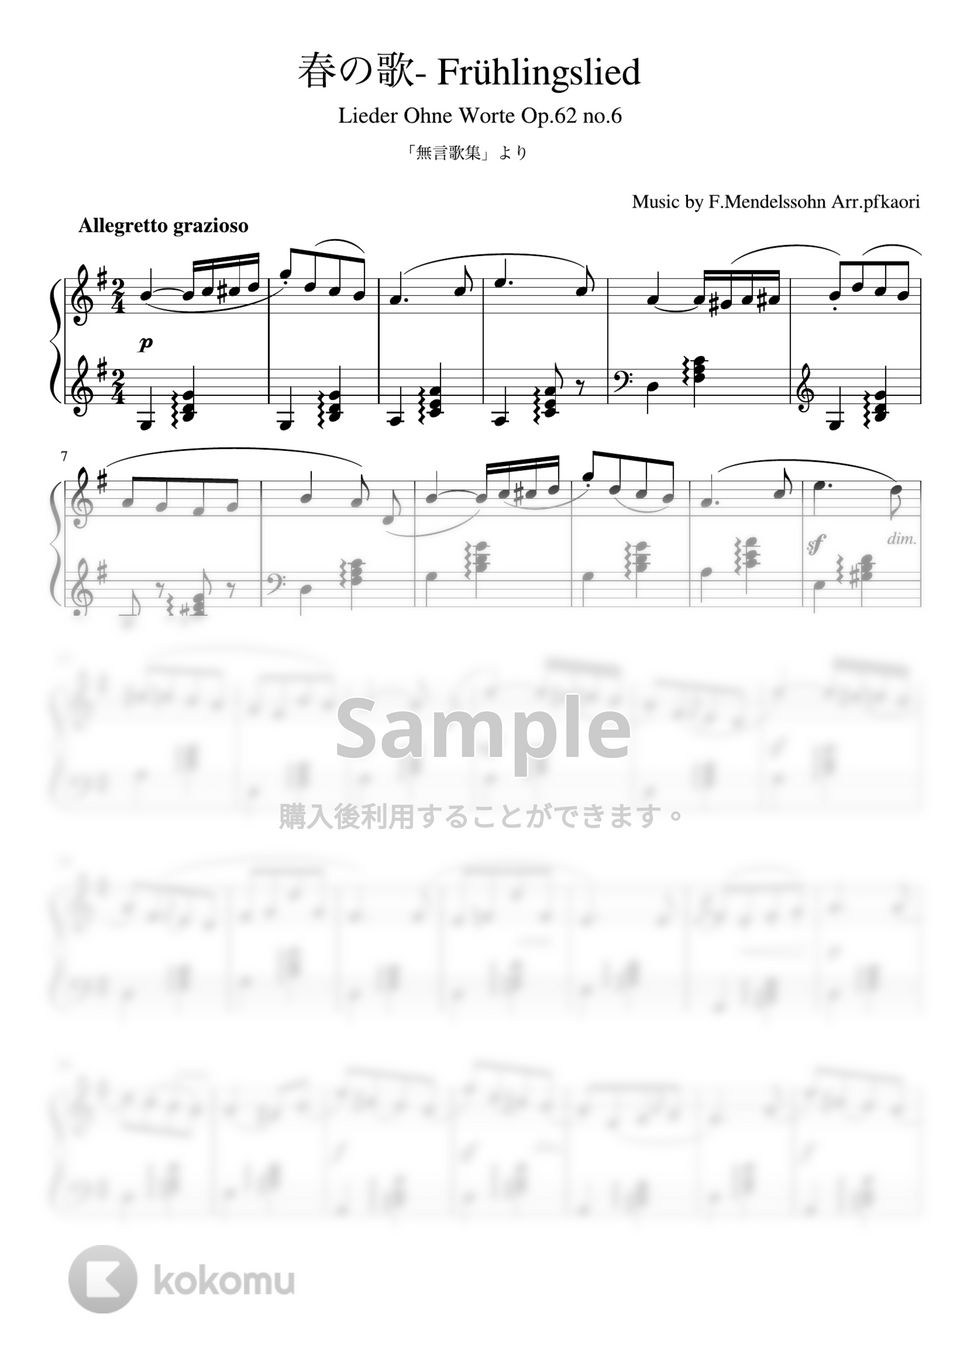 メンデルスゾーン - 春の歌 (ピアノソロ中級) by pfkaori